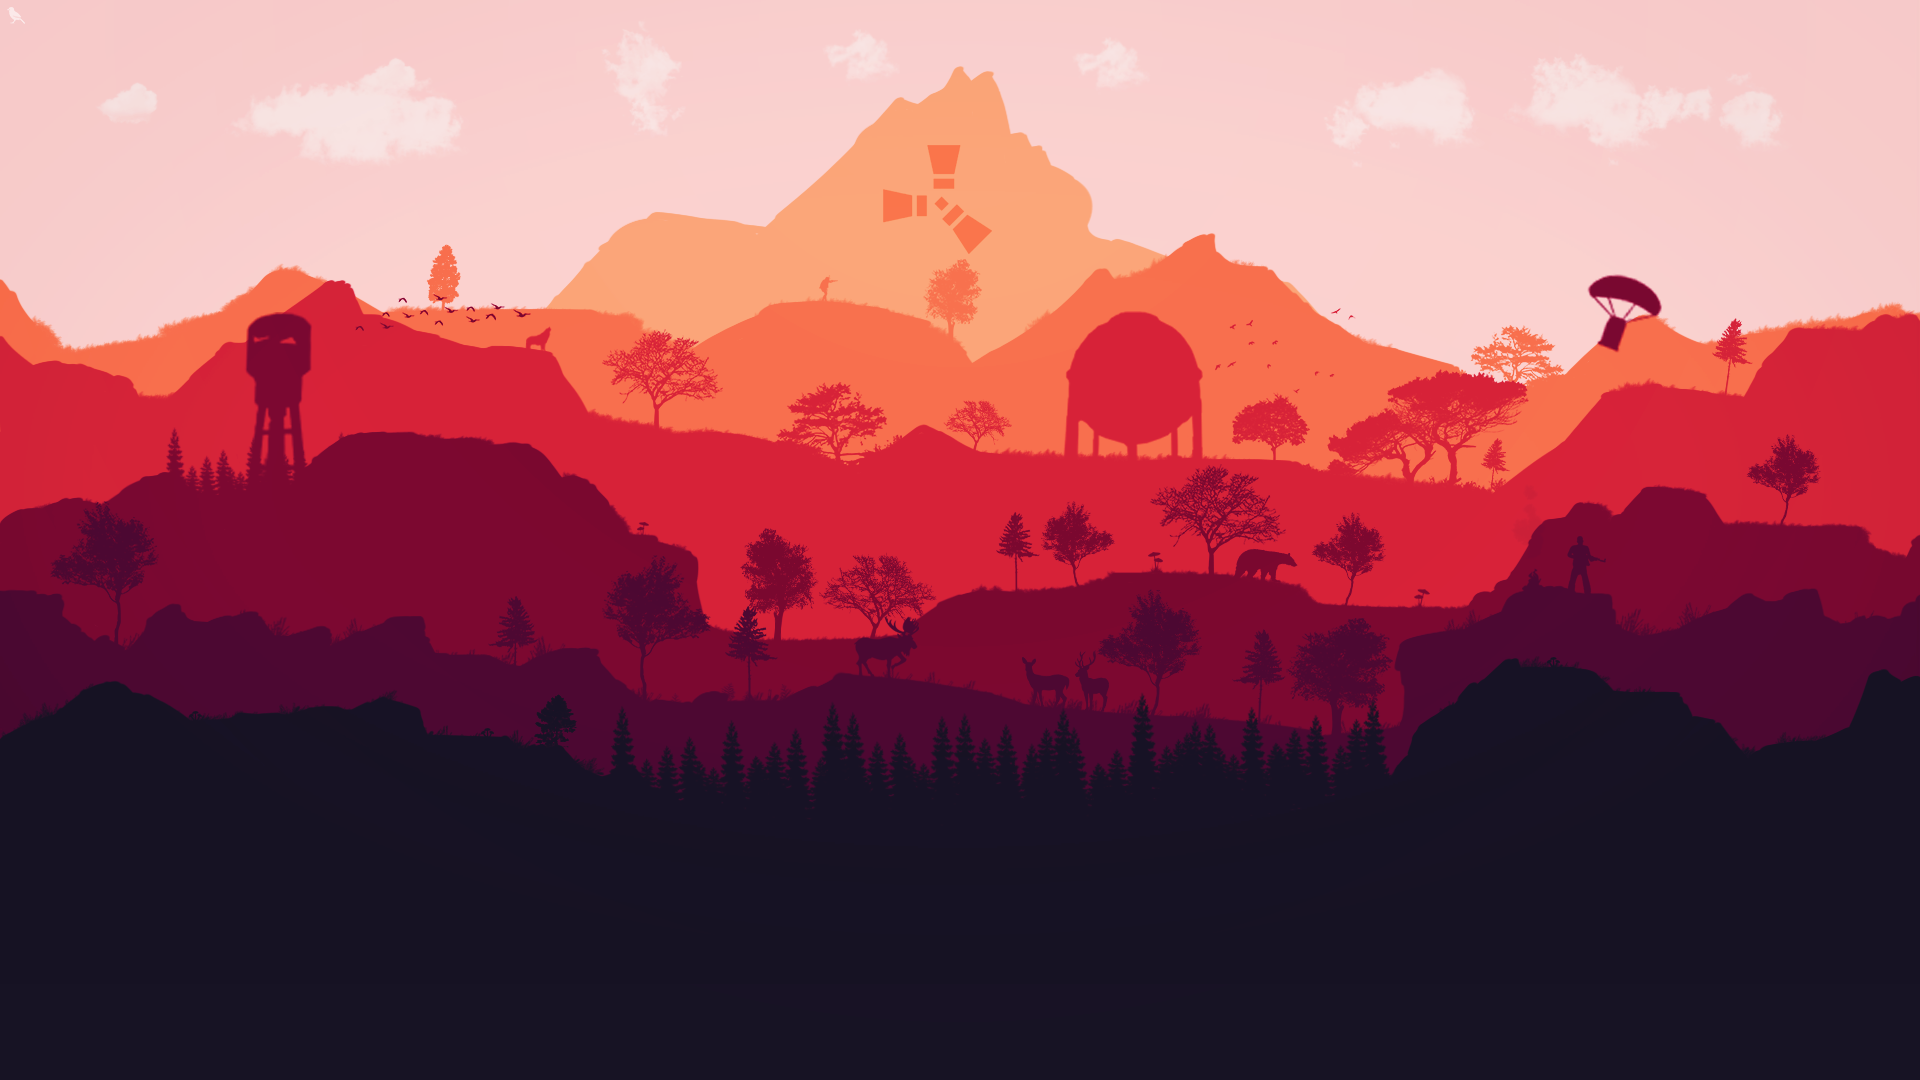 Nền rừng game 2D: Cùng bước vào thế giới rừng hoang dã với hình nền game 2D đầy sống động. Bạn sẽ được lạc vào một khu rừng tuyệt đẹp, đầy nhiệt huyết và những câu chuyện kỳ bí. Hãy tải hình nền rừng game 2D ngay để thỏa mãn niềm đam mê game của mình.